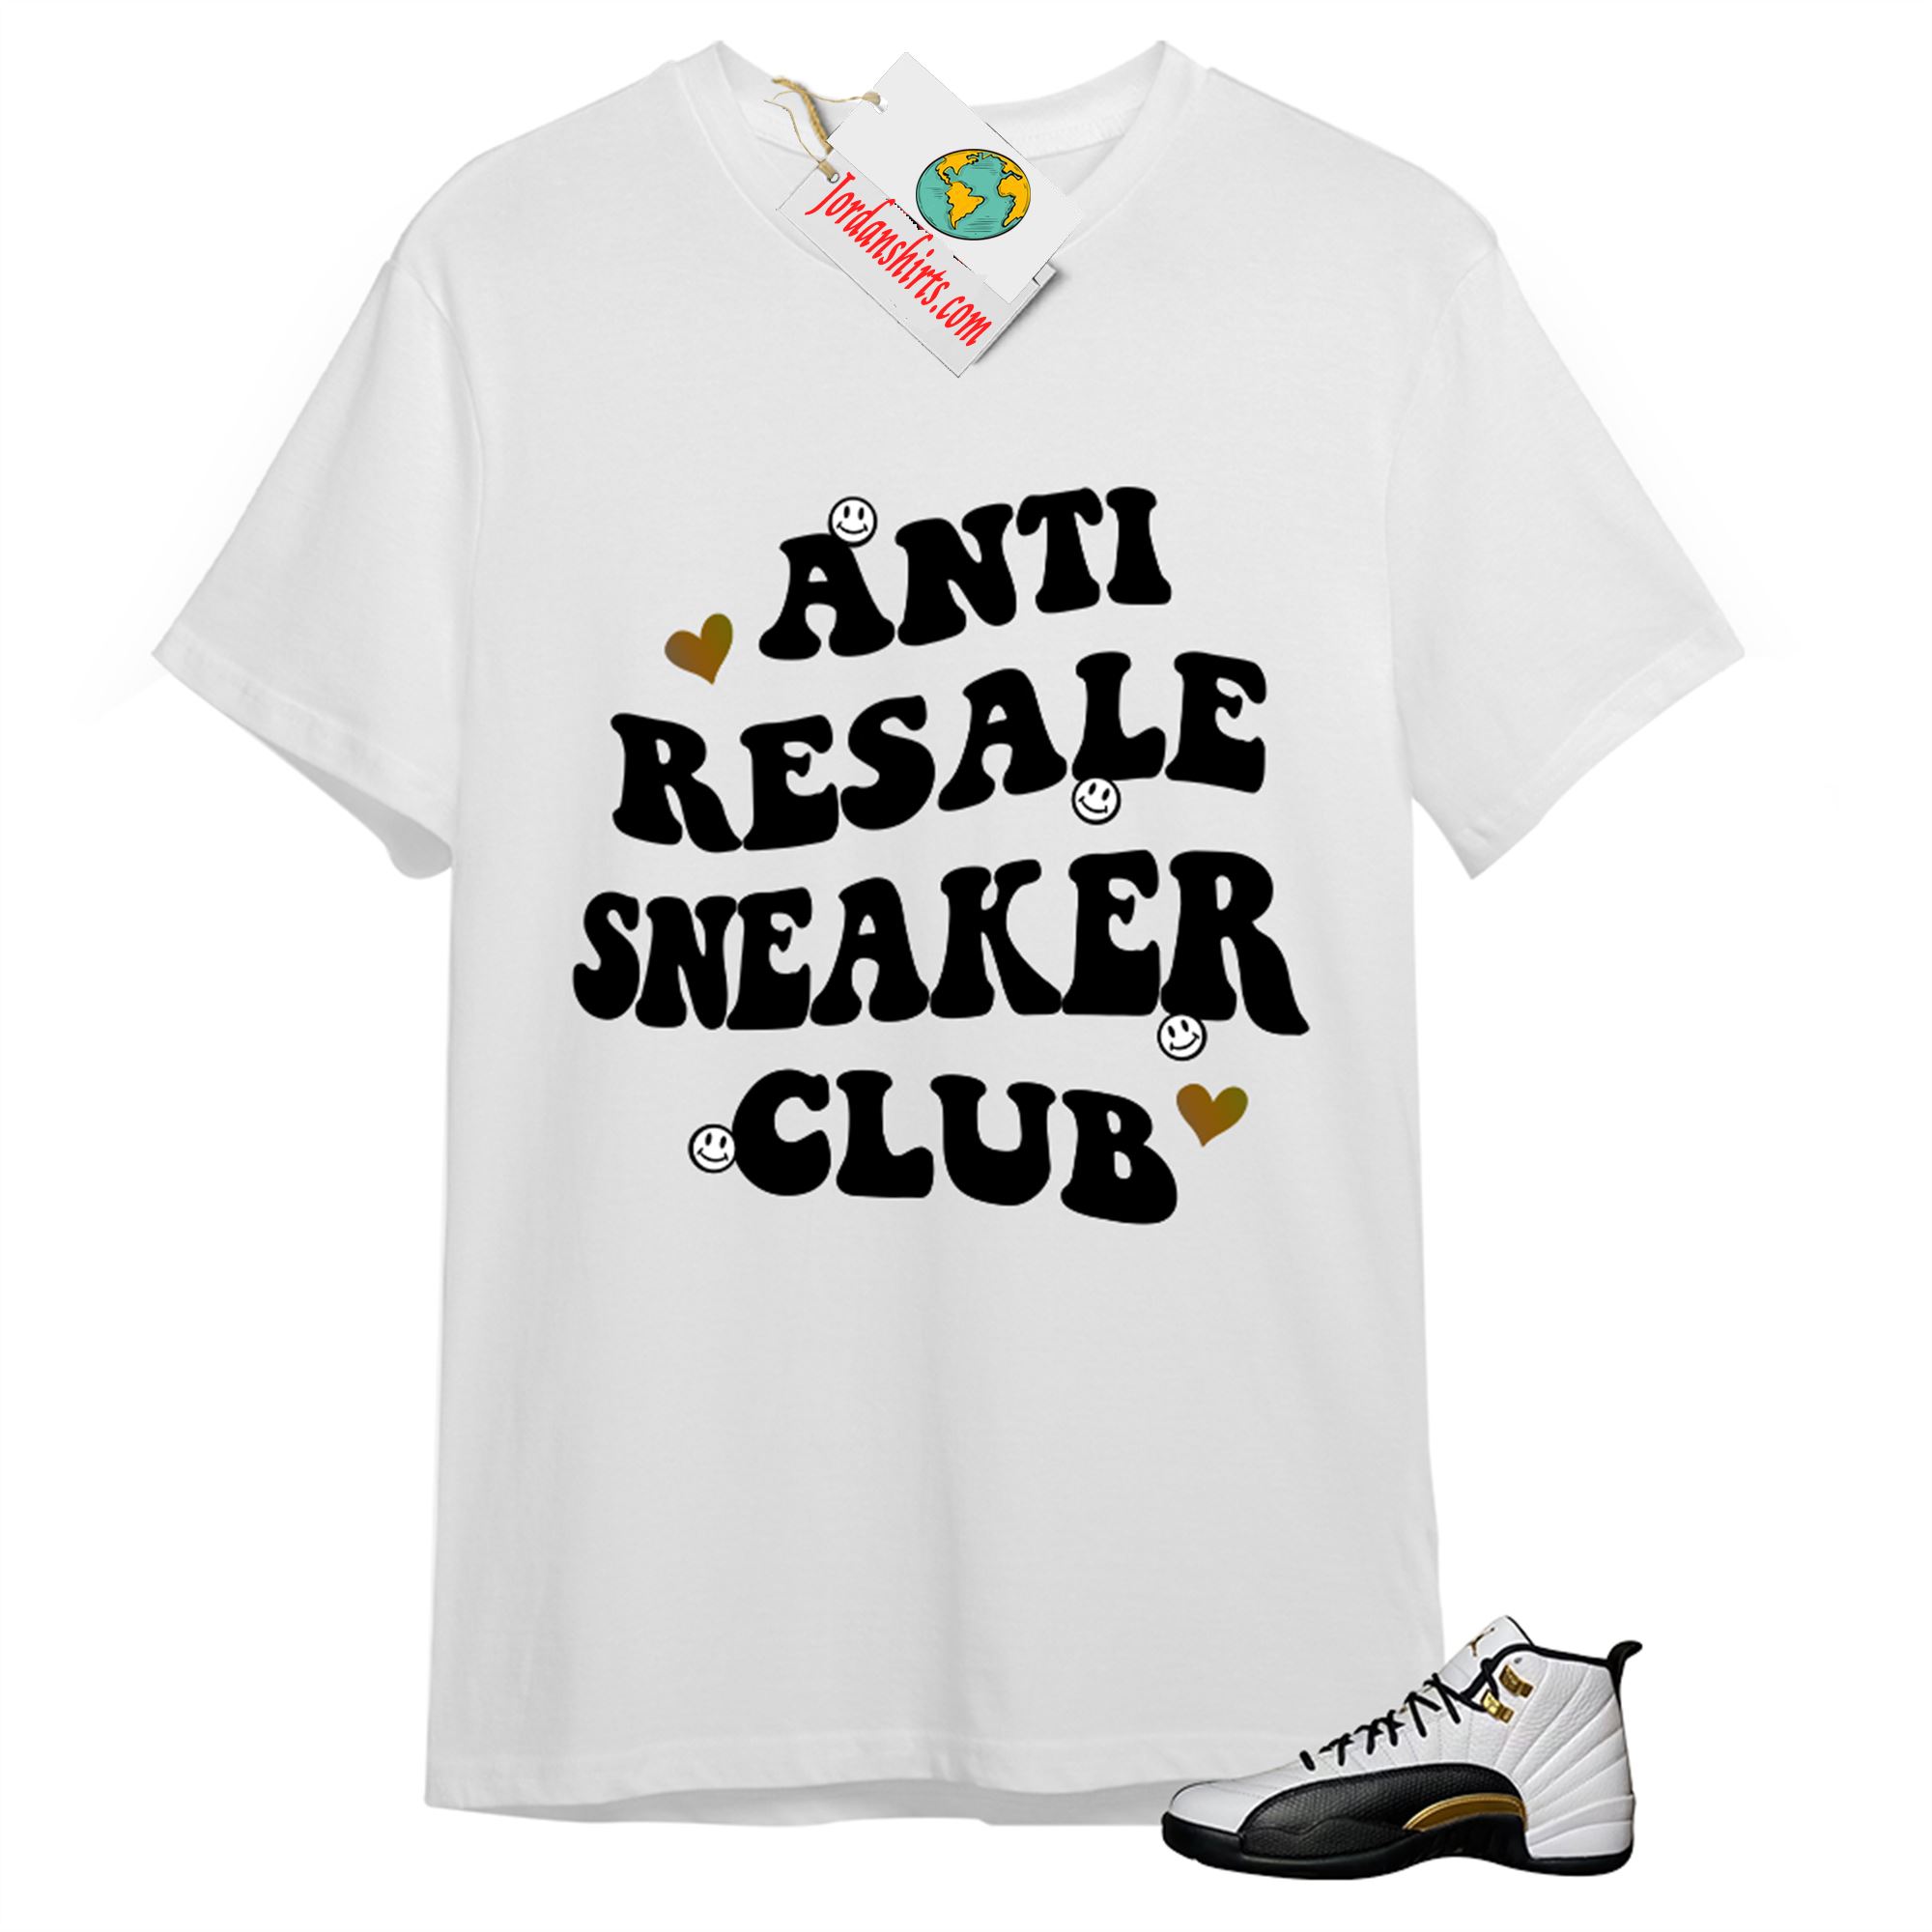 Jordan 12 Shirt, Anti Resale Sneaker Club White T-shirt Air Jordan 12 Royalty 12s Plus Size Up To 5xl